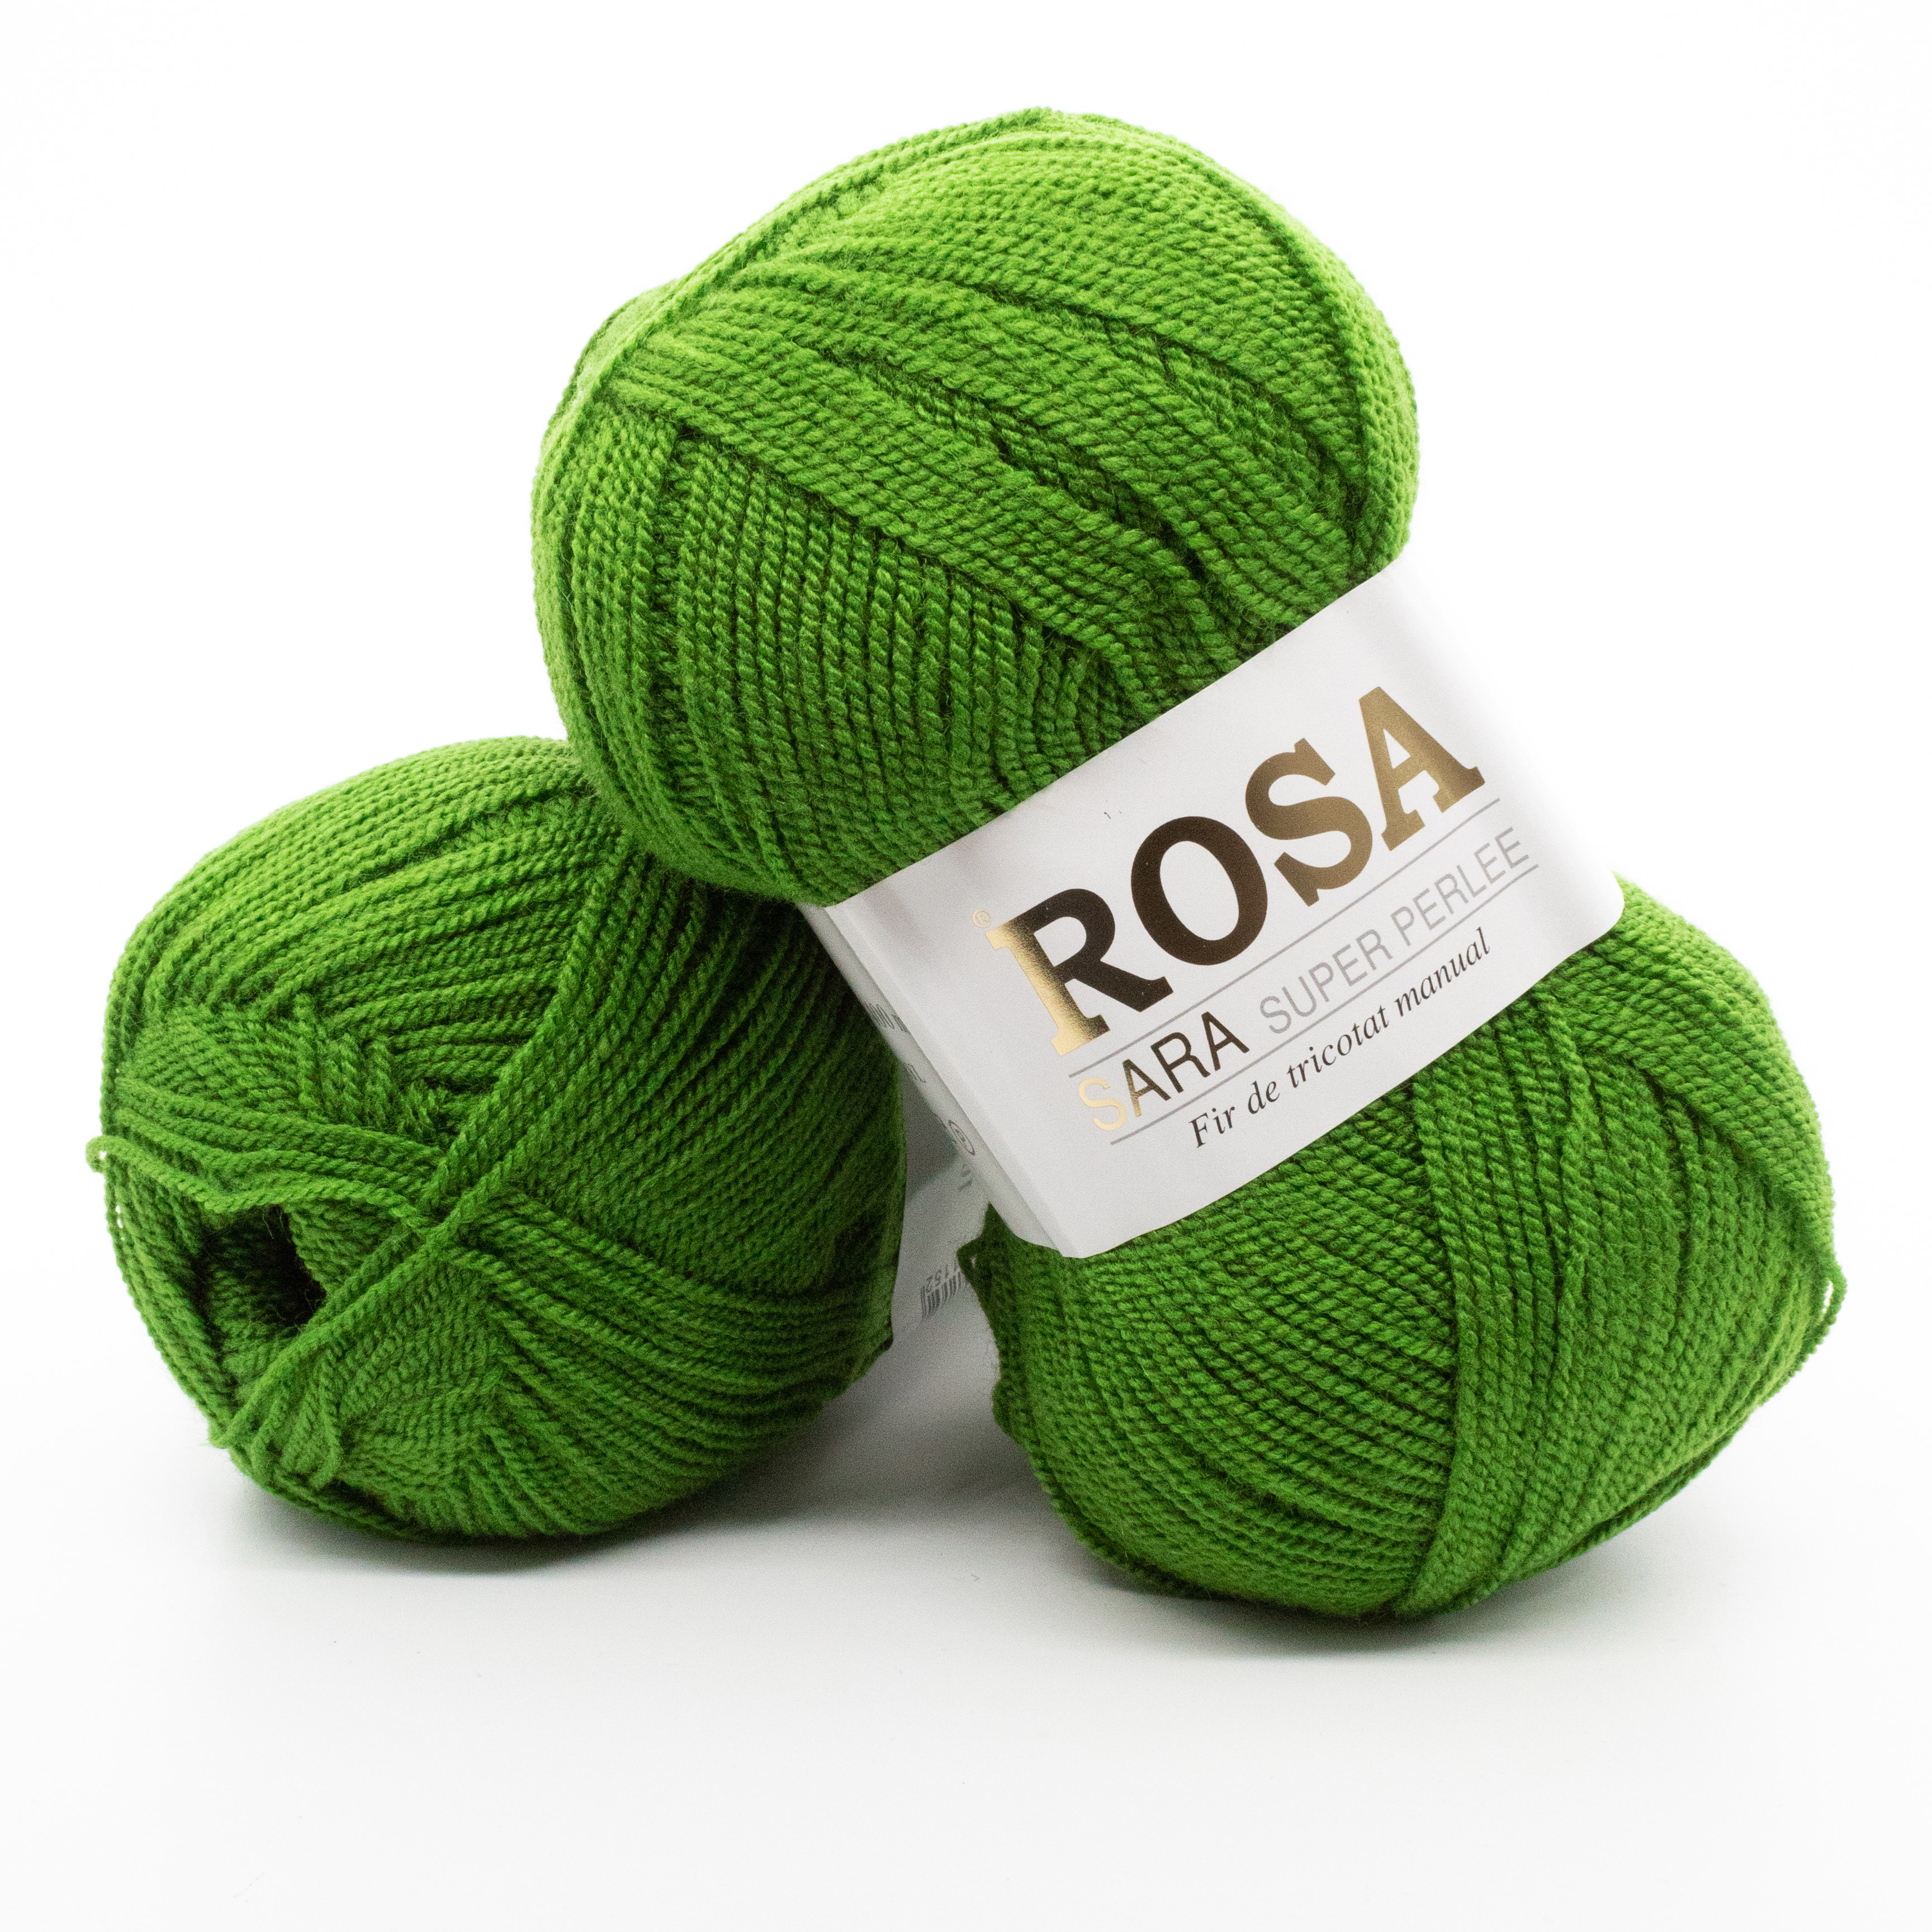 Luster forgive closet Pachet fir tricotat Rosa Sara, 5 bobine, cod 248, acril 100%, 500 g/pachet,  culoare verde - eMAG.ro